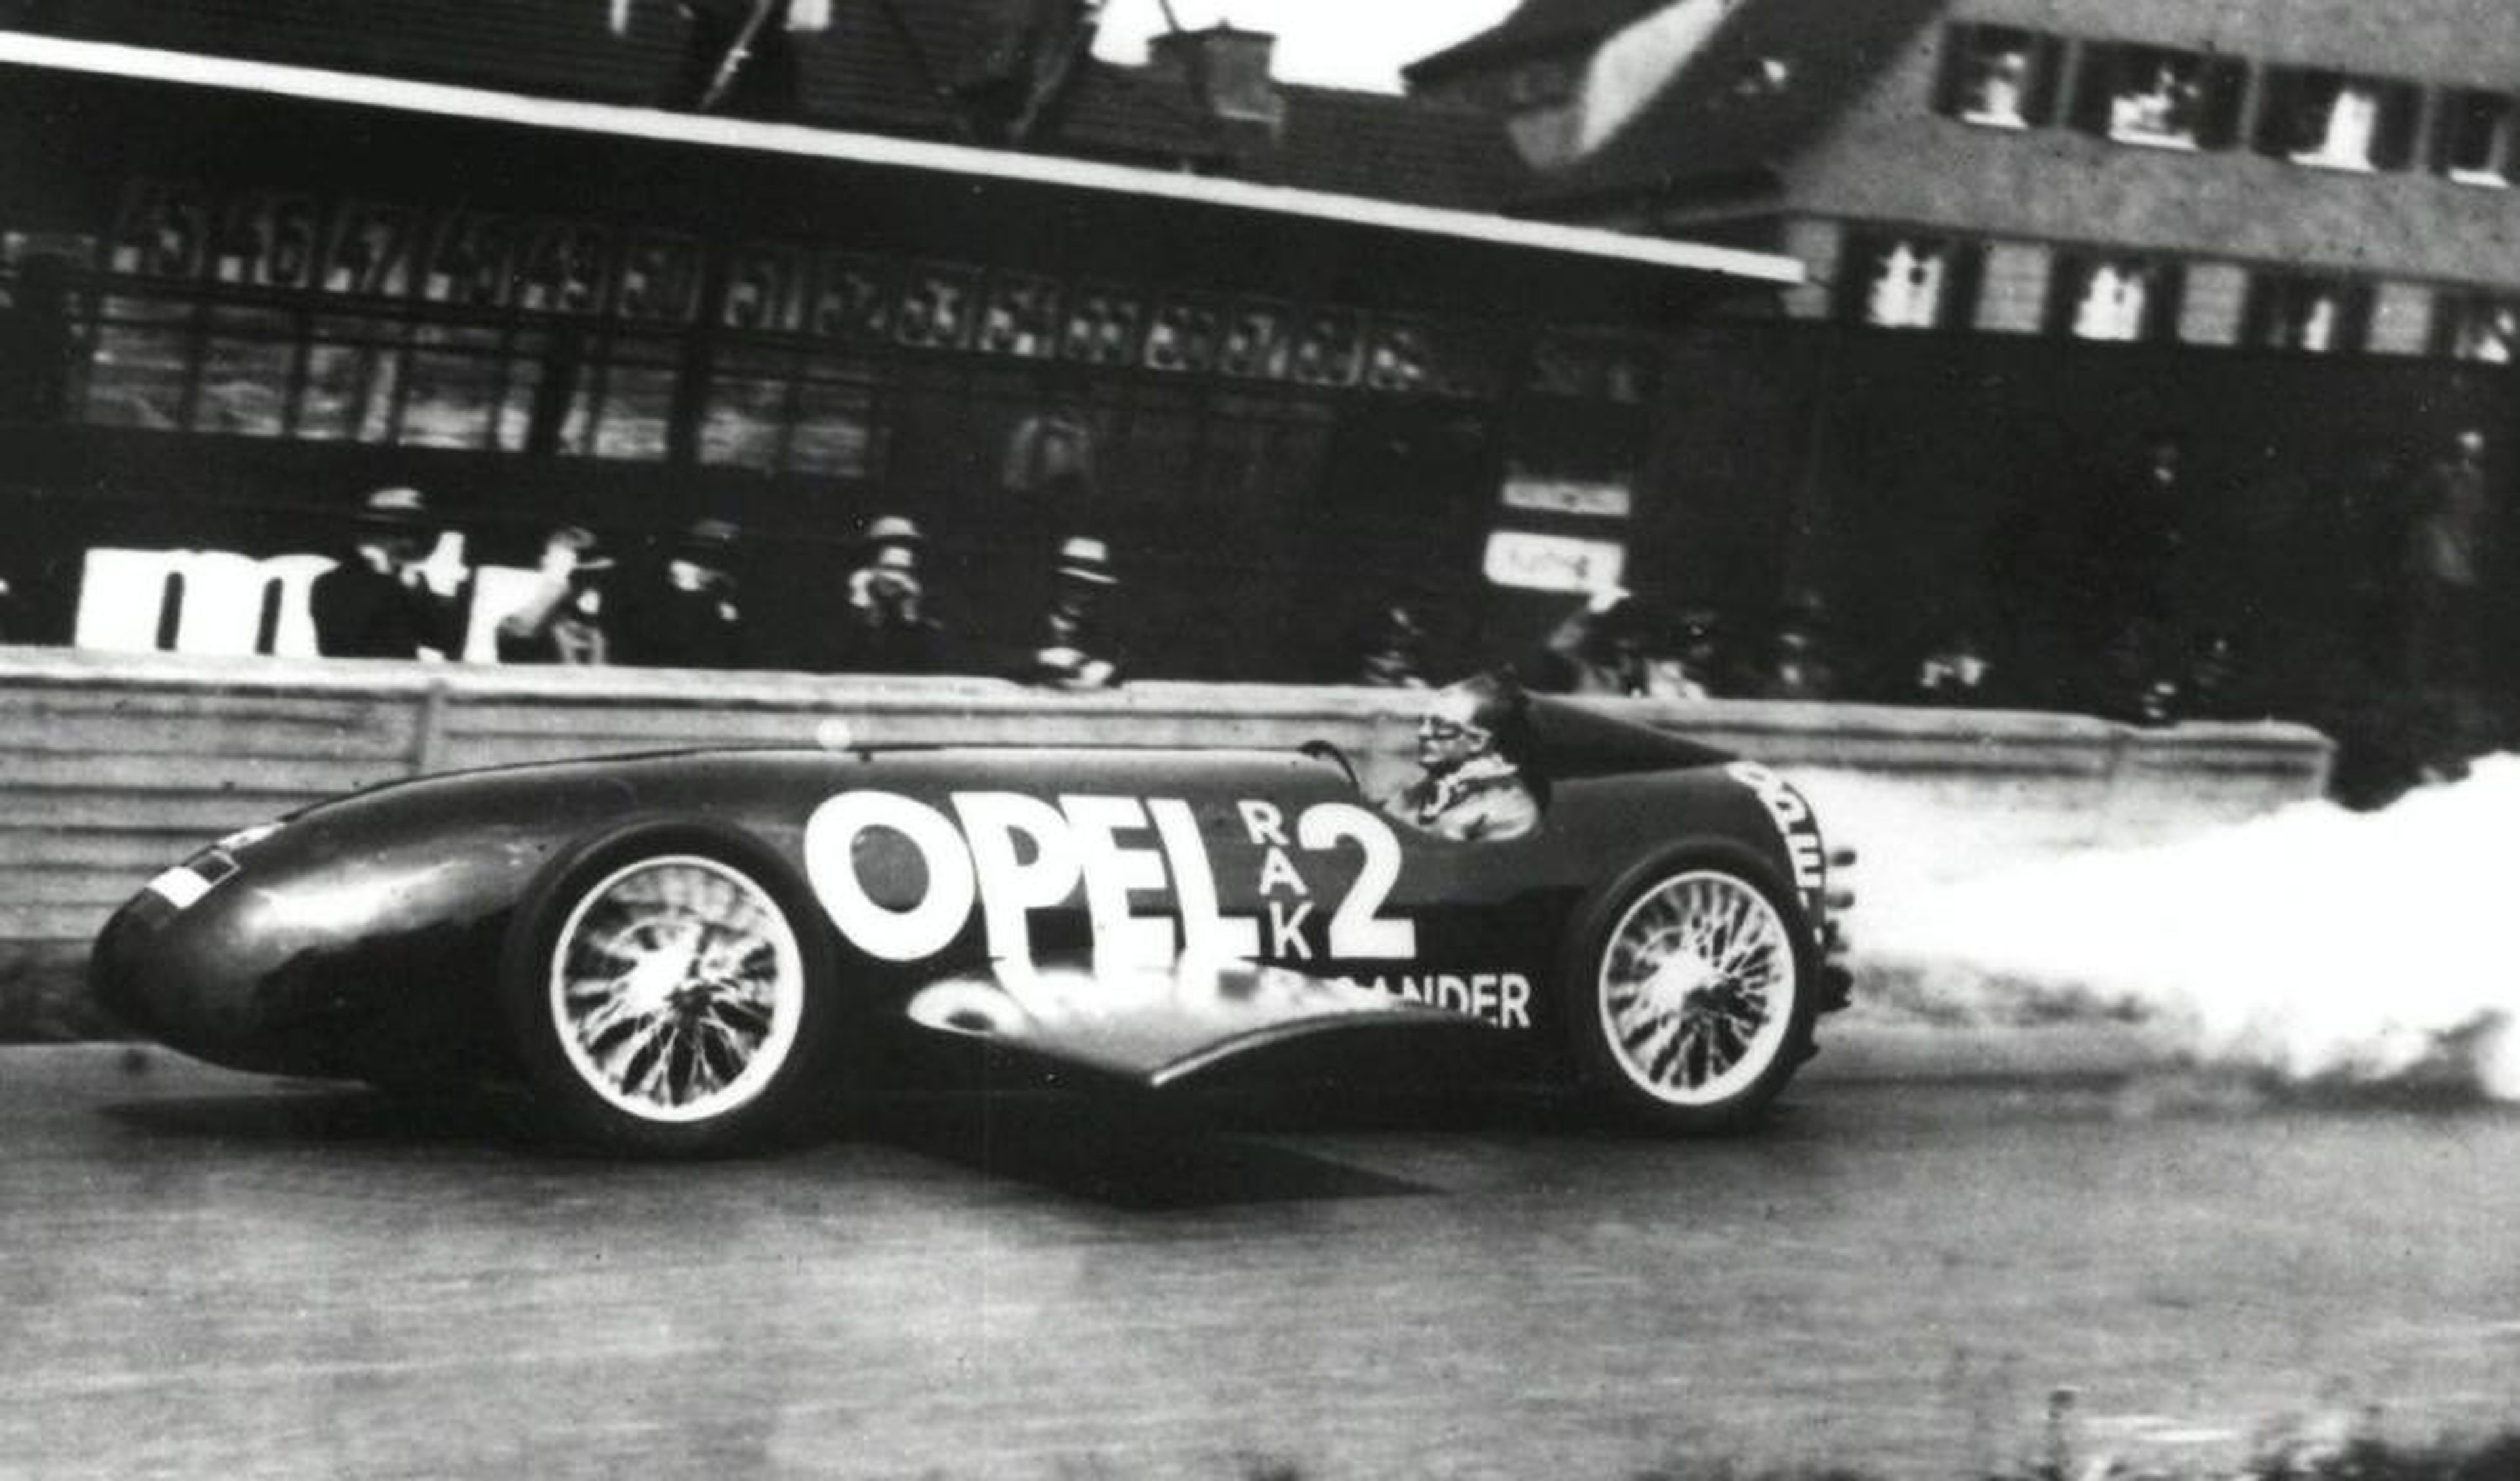 Opel RAK II